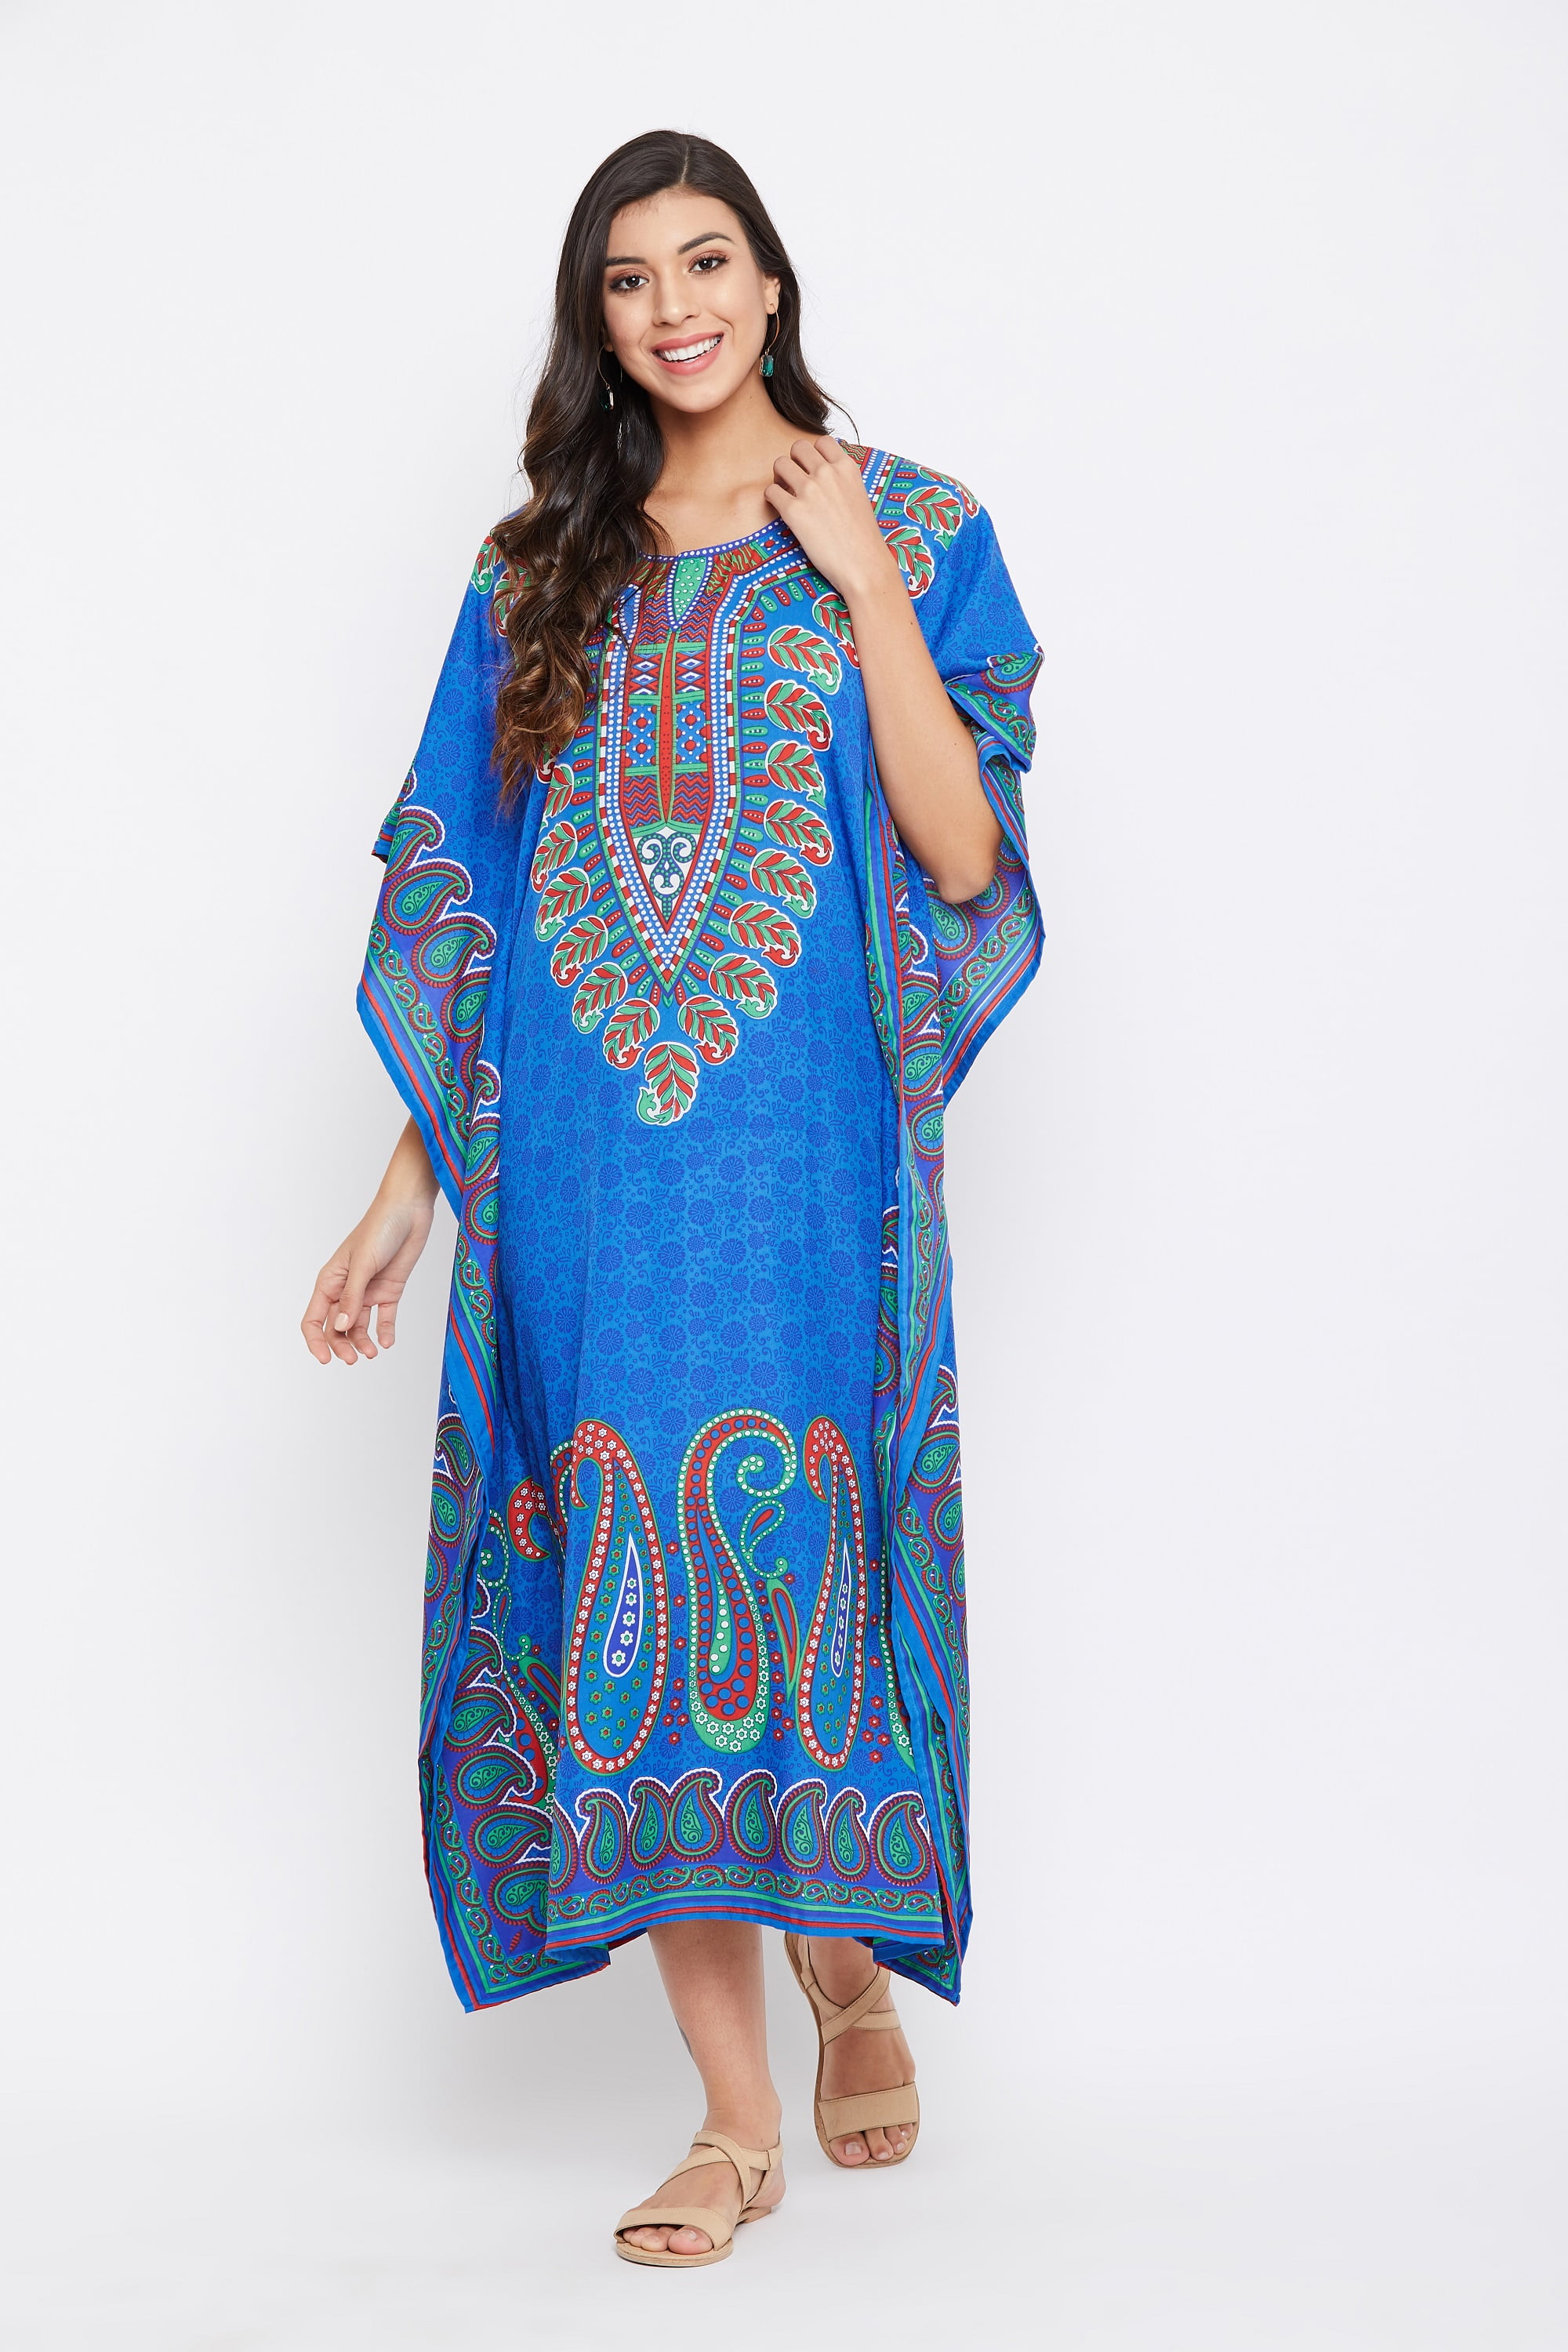 Gypsie Blu Plus Size Kaftan Dress for Women Printed Loose Maxi Kimono ...